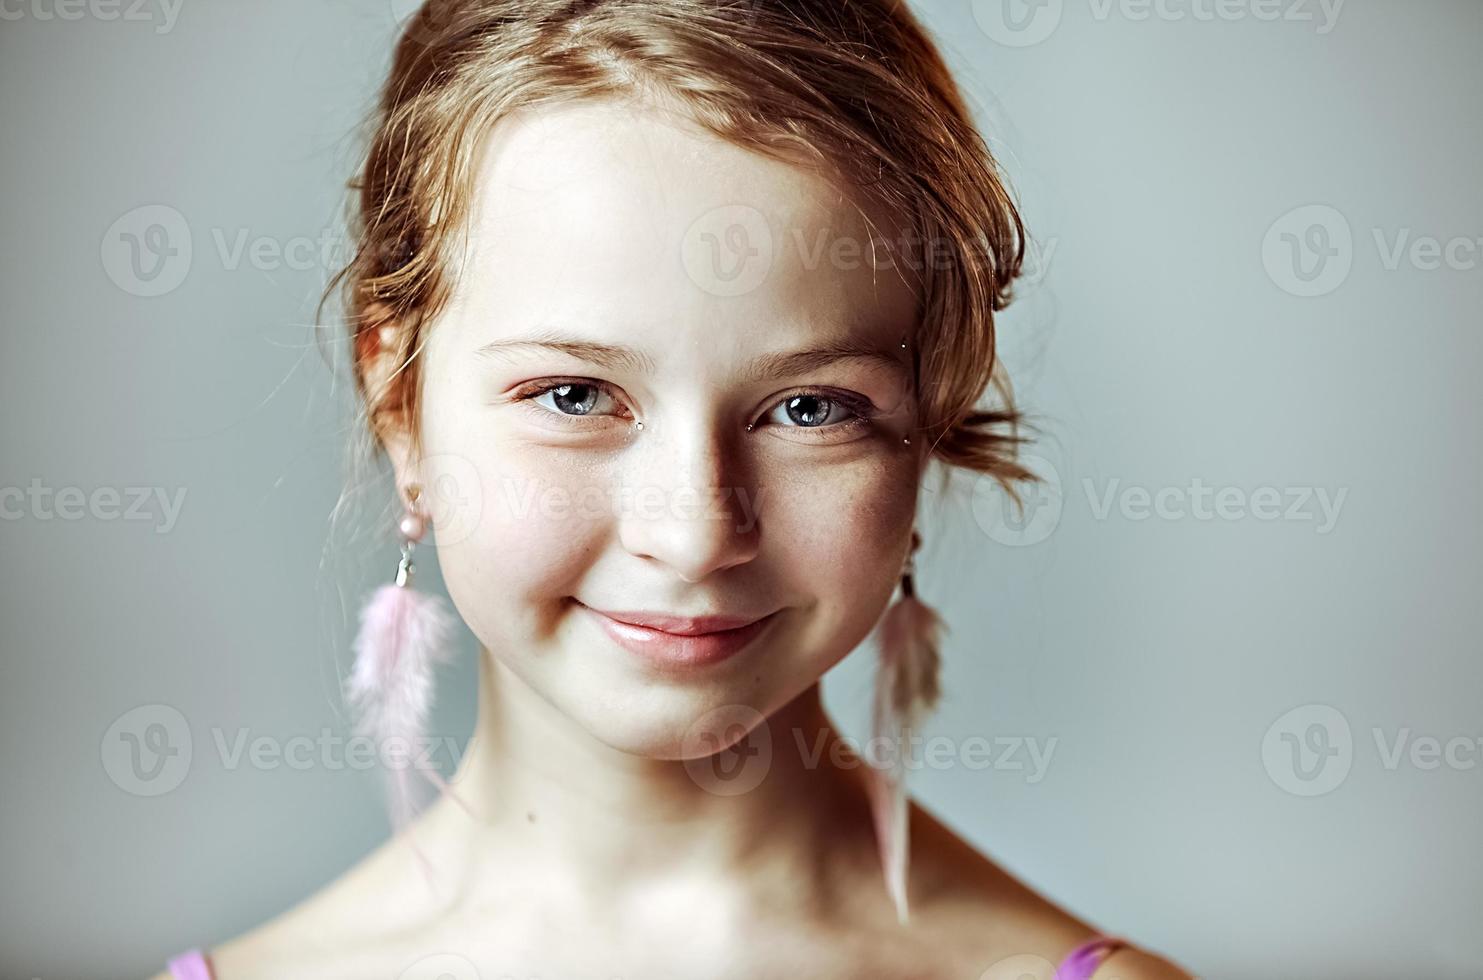 portrait en gros plan d'une jeune fille avec un maquillage festif pour une fête. La Saint-Valentin. boucles d'oreilles-plumes aux oreilles du modèle photo